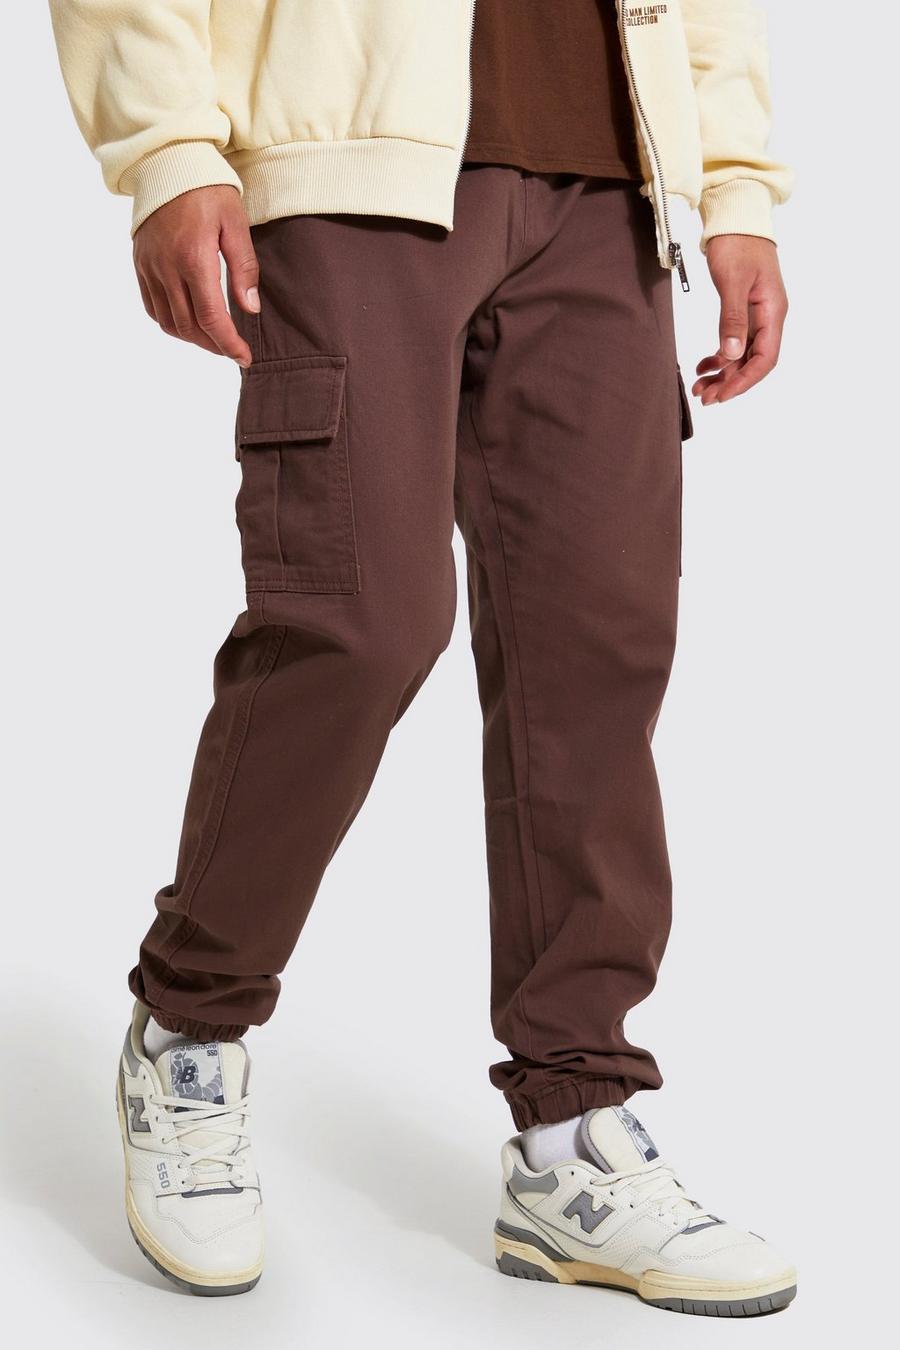 שוקולד marrón מכנסי דגמ'ח בגזרה צרה לגברים גבוהים